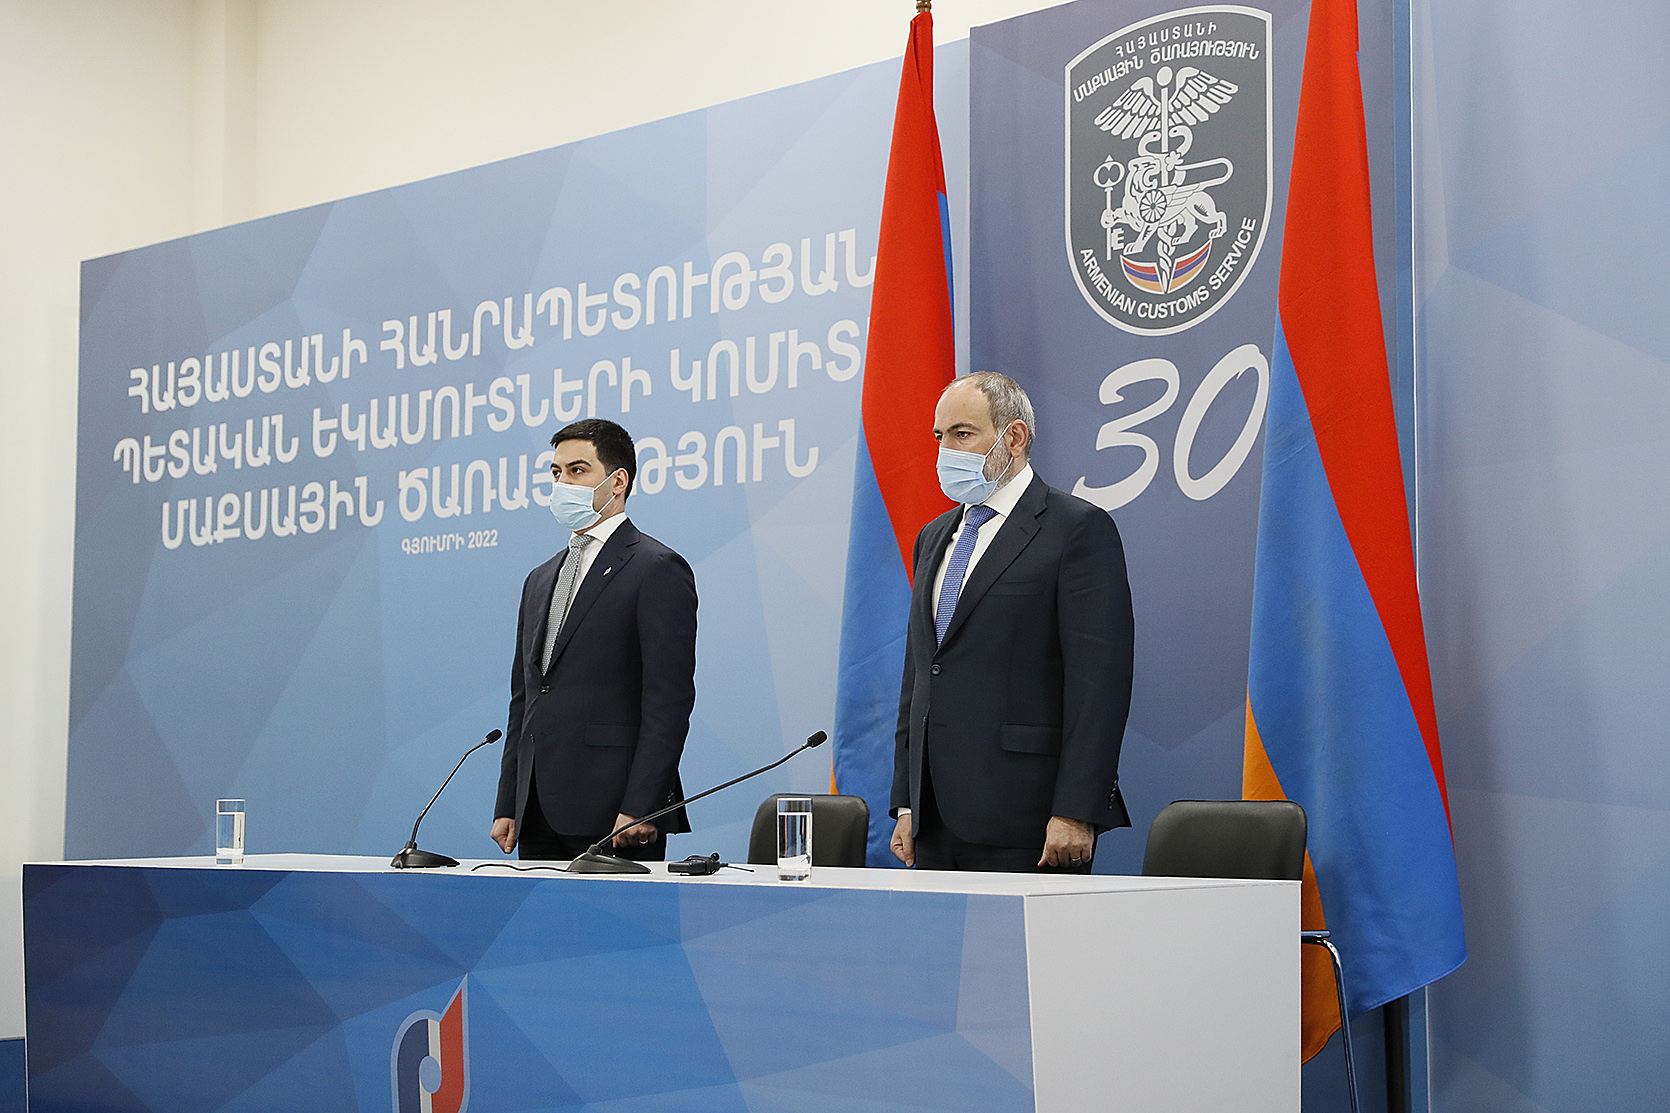 Нужно открыть новую страницу стратегической трансформации Таможенной службы: премьер-министр принял участие в мероприятии, посвященном 30-летию Таможенной службы Армении